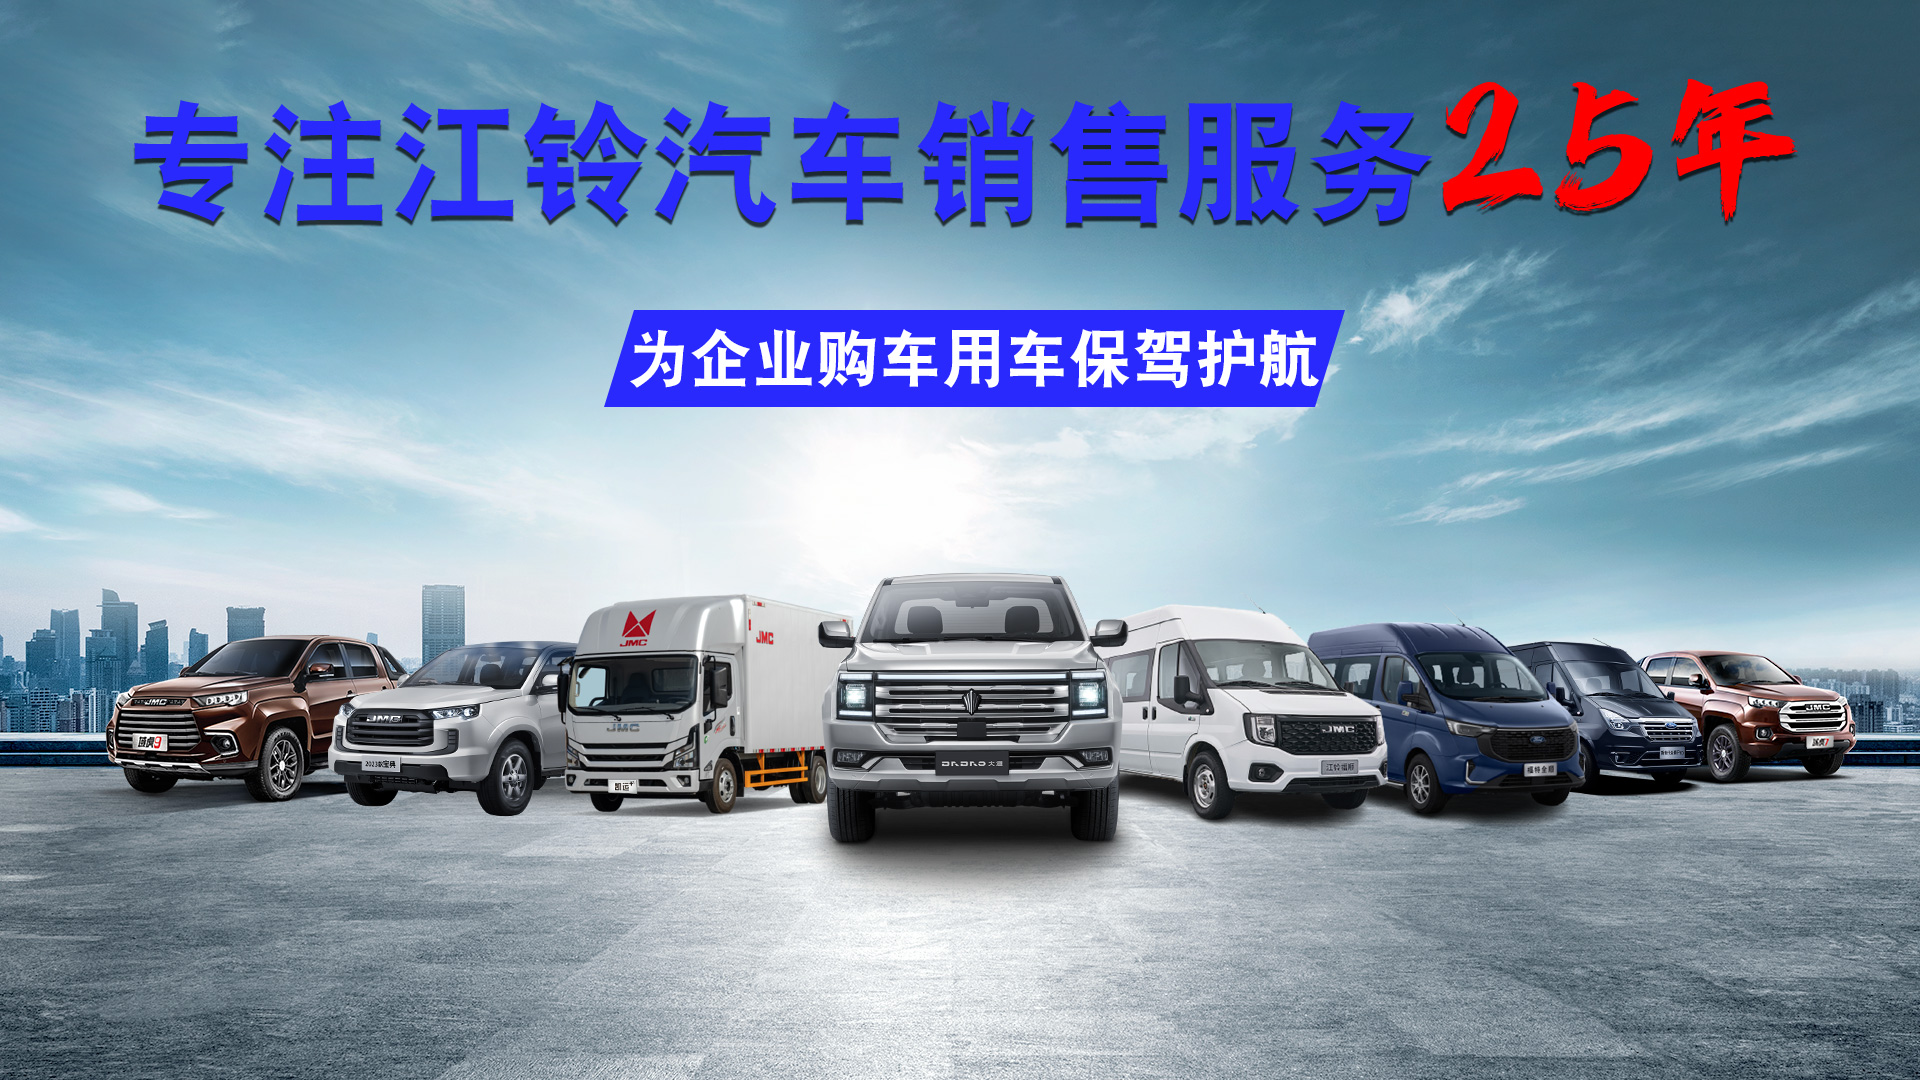 上海科达专注江铃汽车销售服务25年